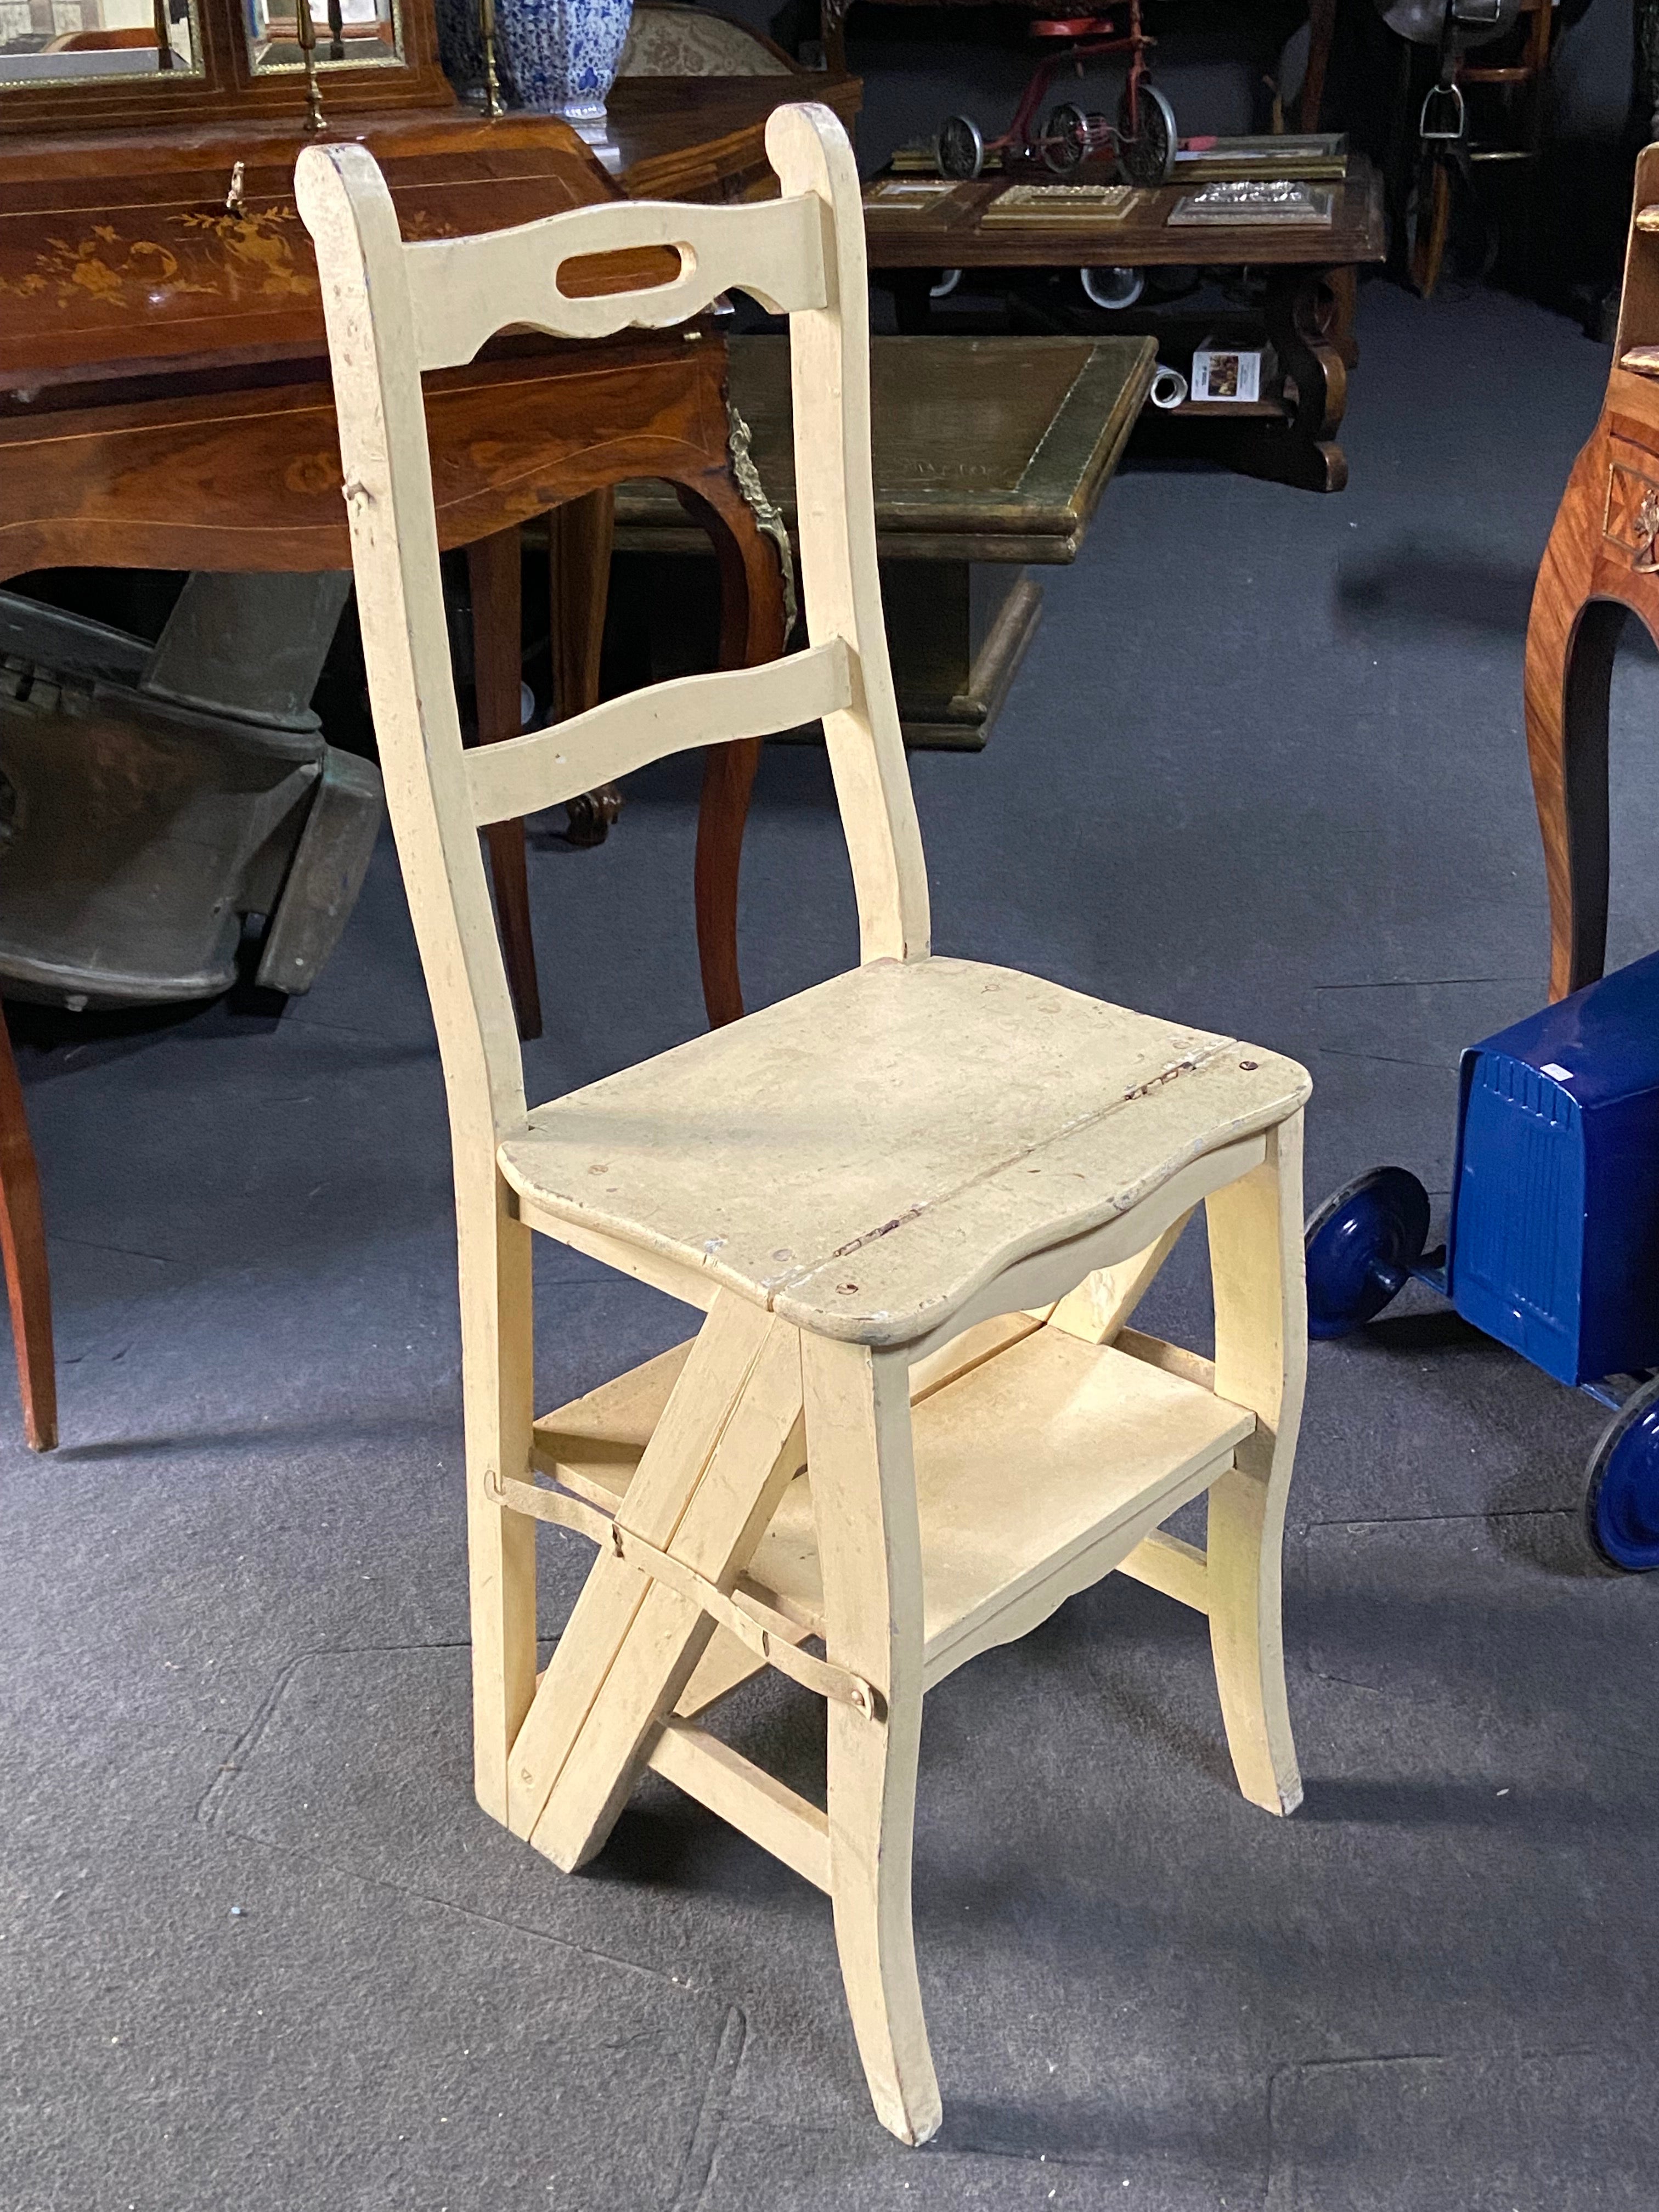 Fabriquée au début du 20e siècle en France, cette ancienne chaise à échelle peinte à la main en beige est fonctionnelle comme siège ou comme échelle de bibliothèque et de cuisine. La chaise se transforme facilement en échelle à quatre marches et